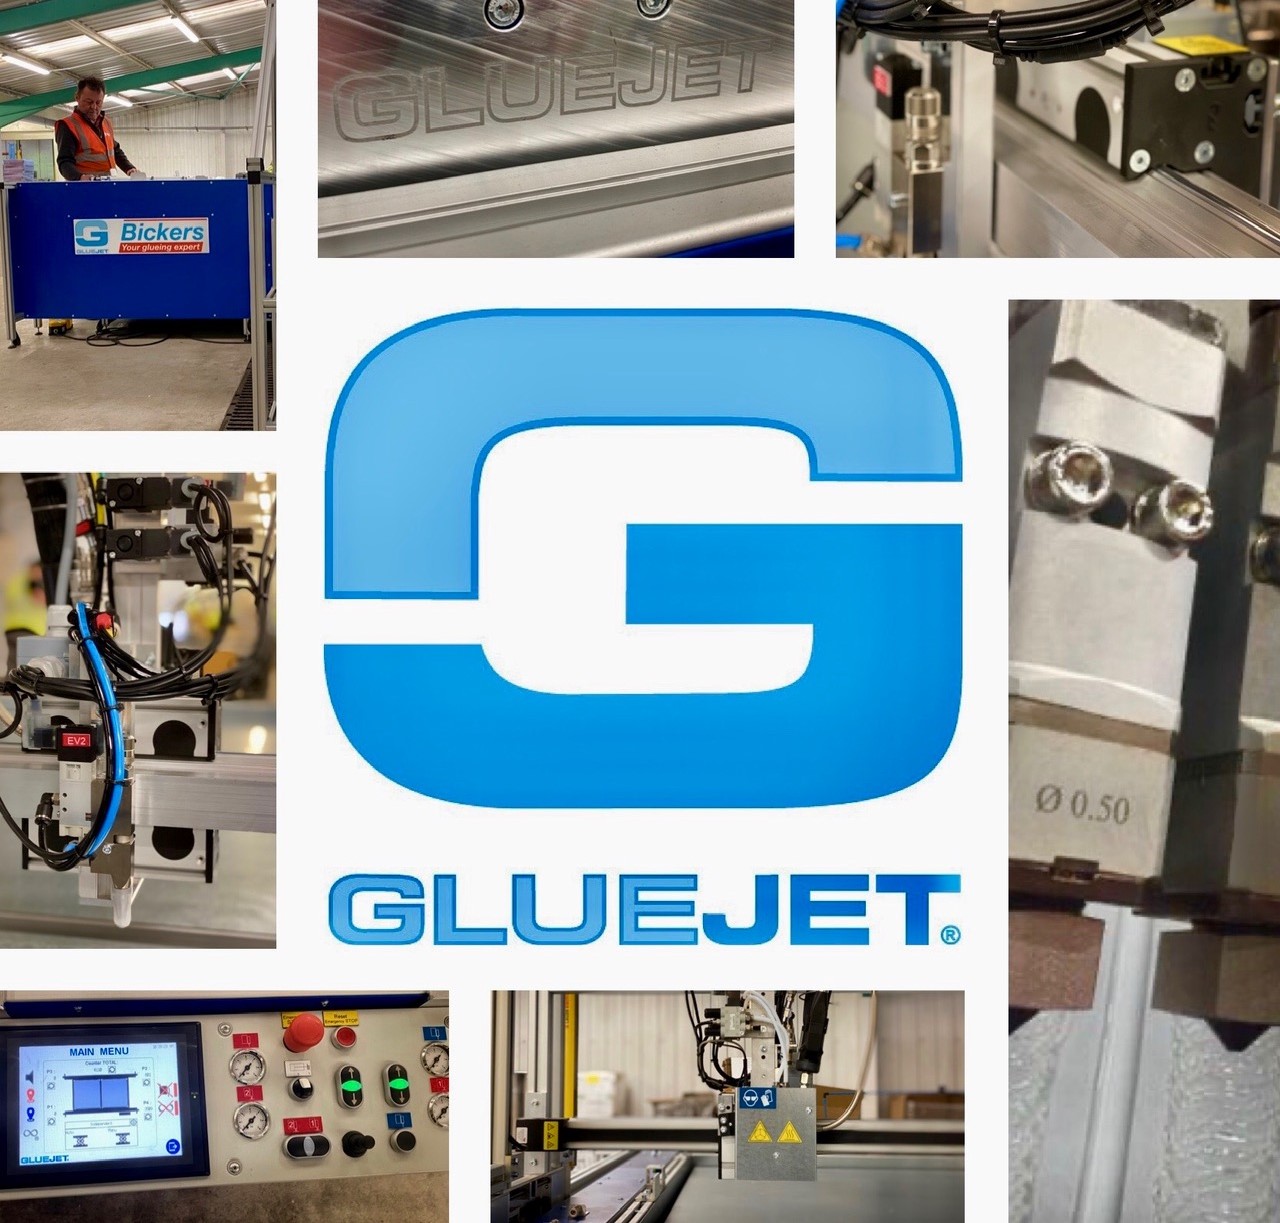 XY Gluer Plotter GLUEJET® (CNC) | Finishline Machinery gallery image 1